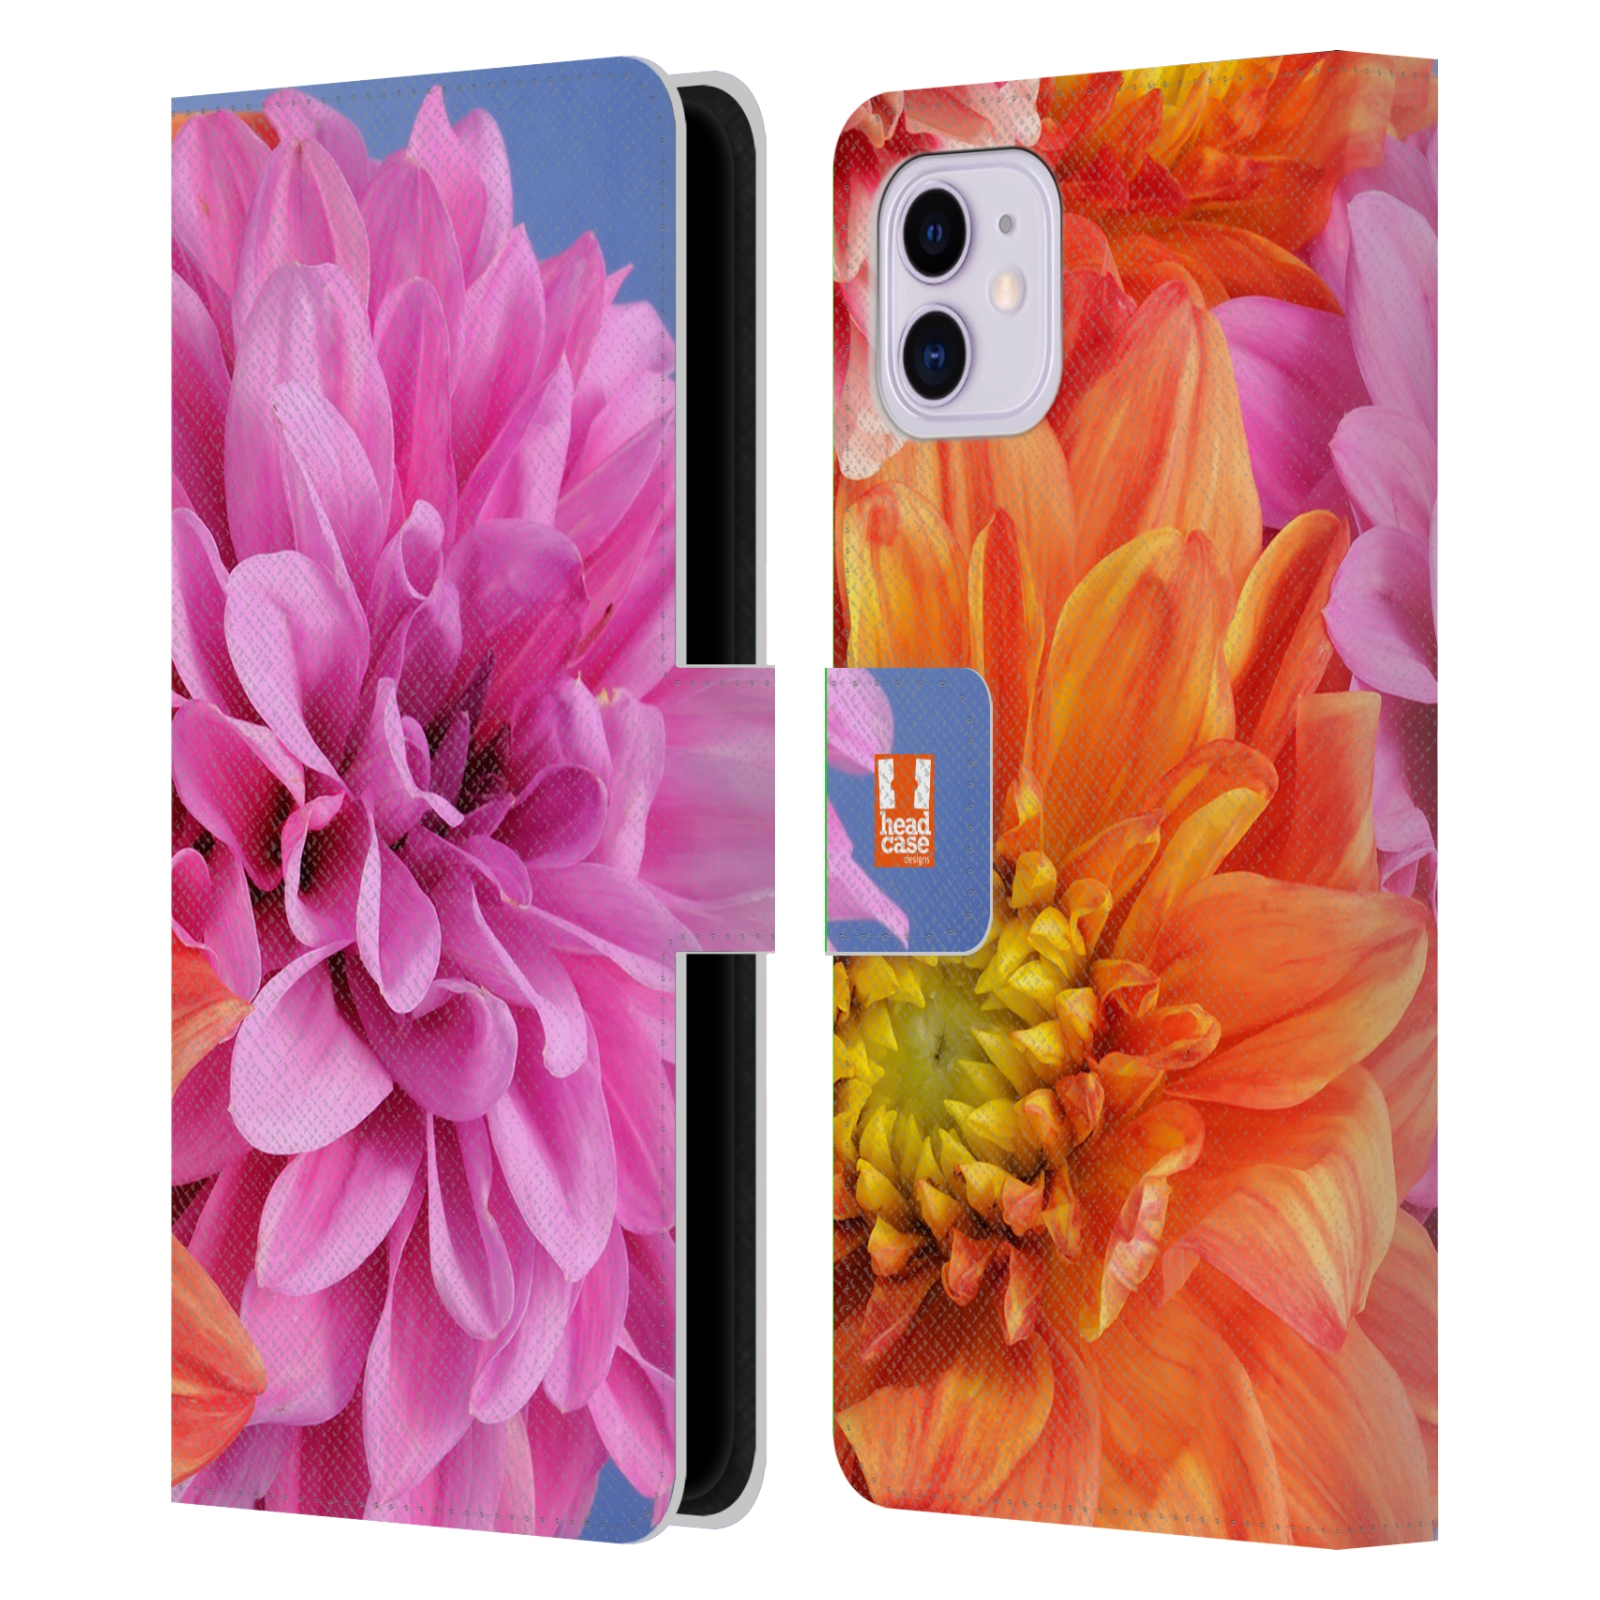 Pouzdro na mobil Apple Iphone 11 květy foto Jiřinka růžová a oranžová